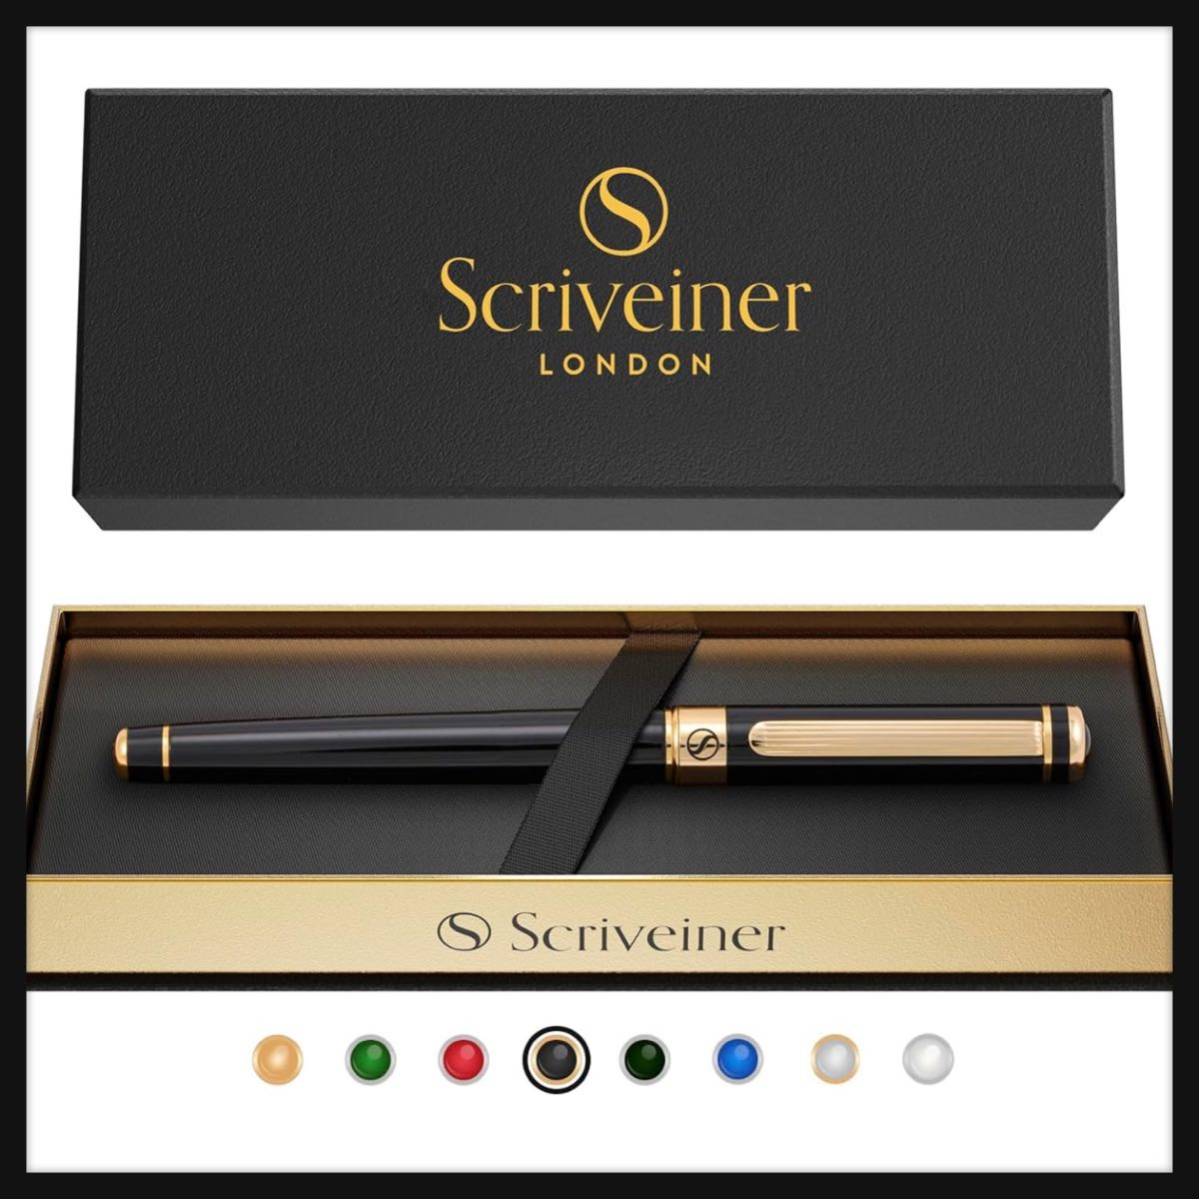 【開封のみ】Scriveiner★ Black Lacquer Rollerball Pen - Stunning Luxury Pen with 24K Gold Finish, Schmidt Inkボールペン の画像1